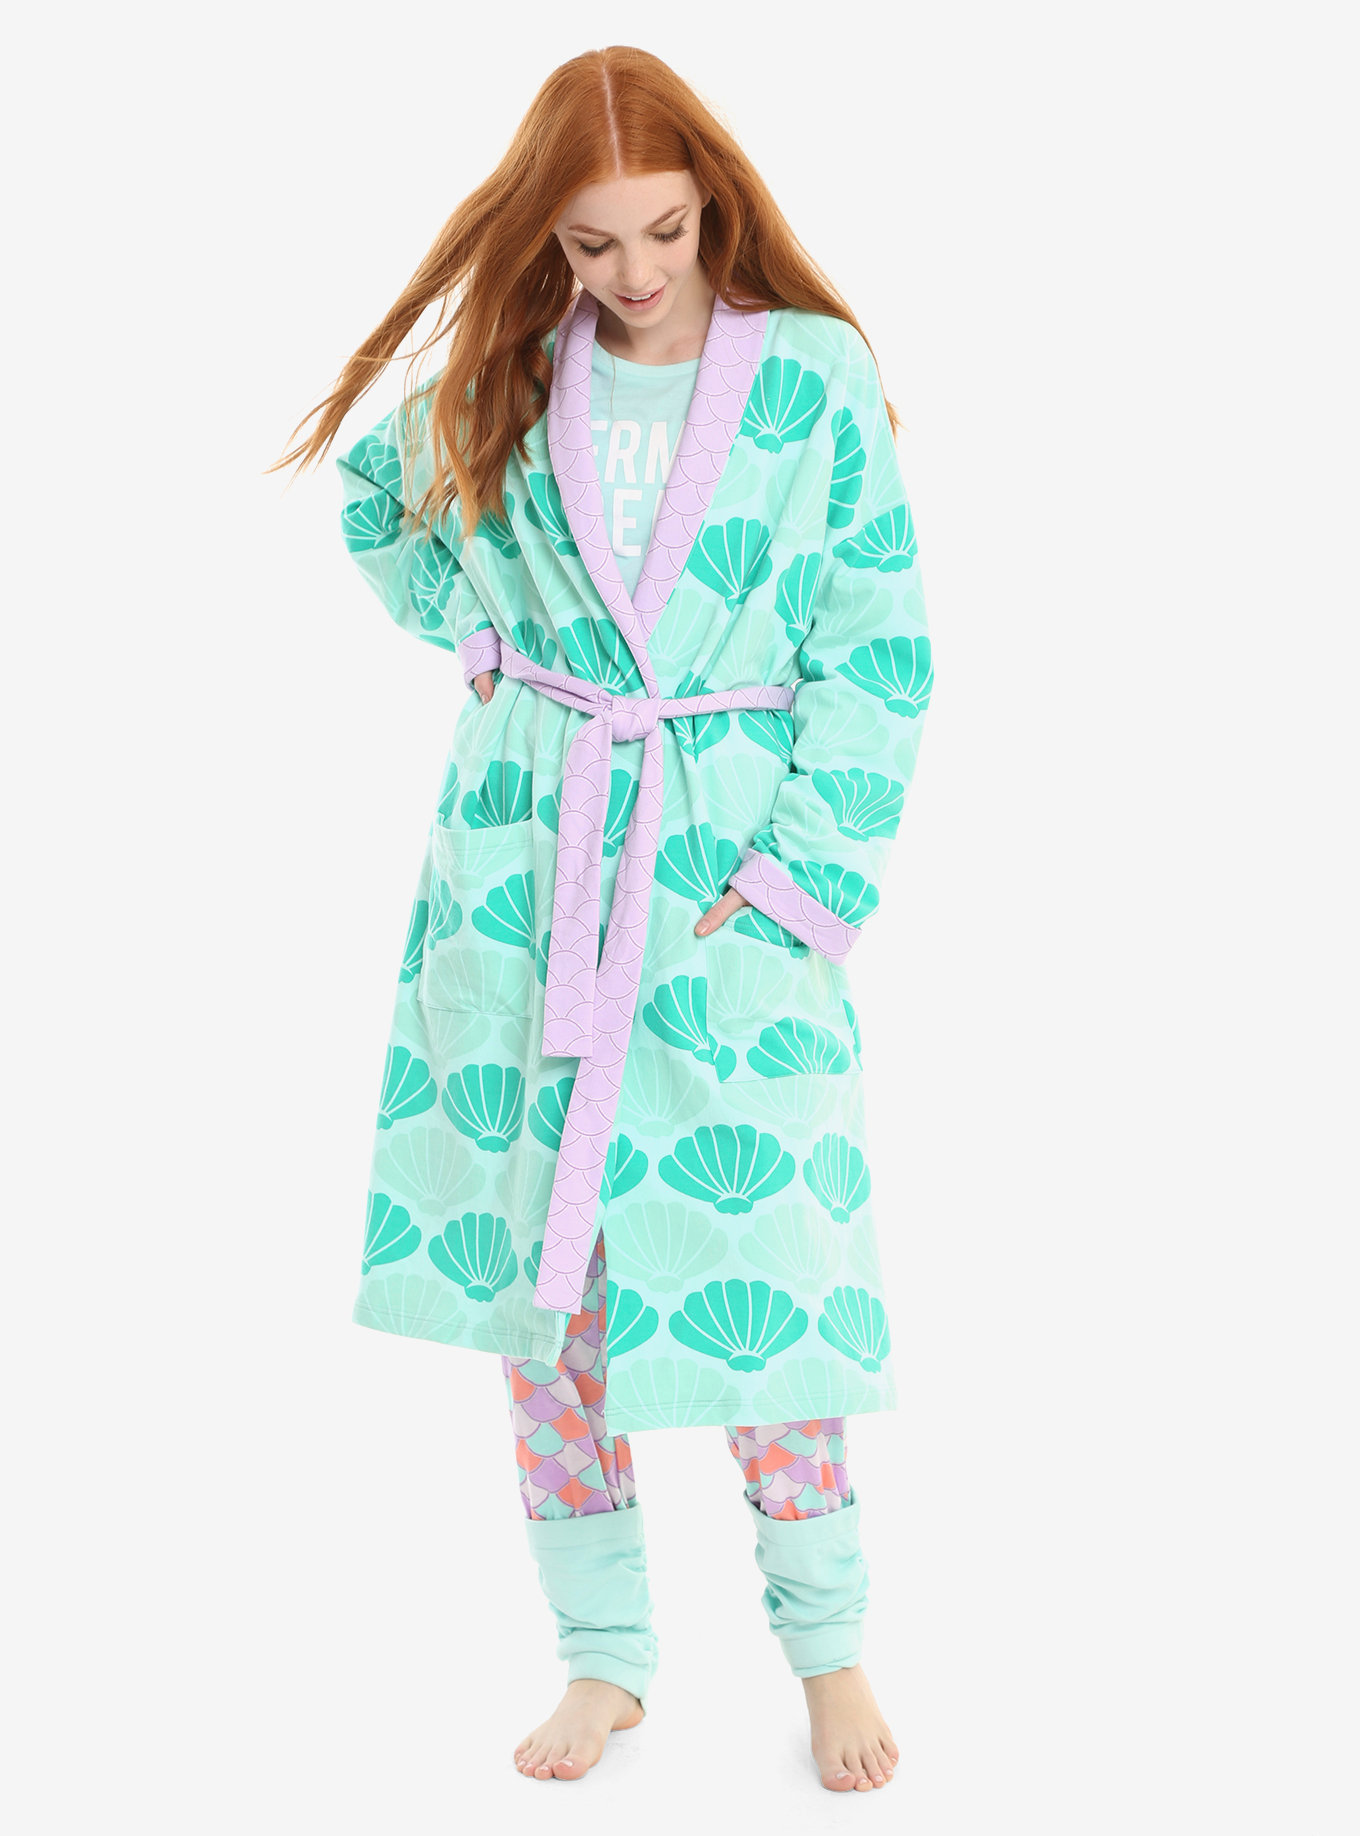 little-mermaid-robe.jpeg